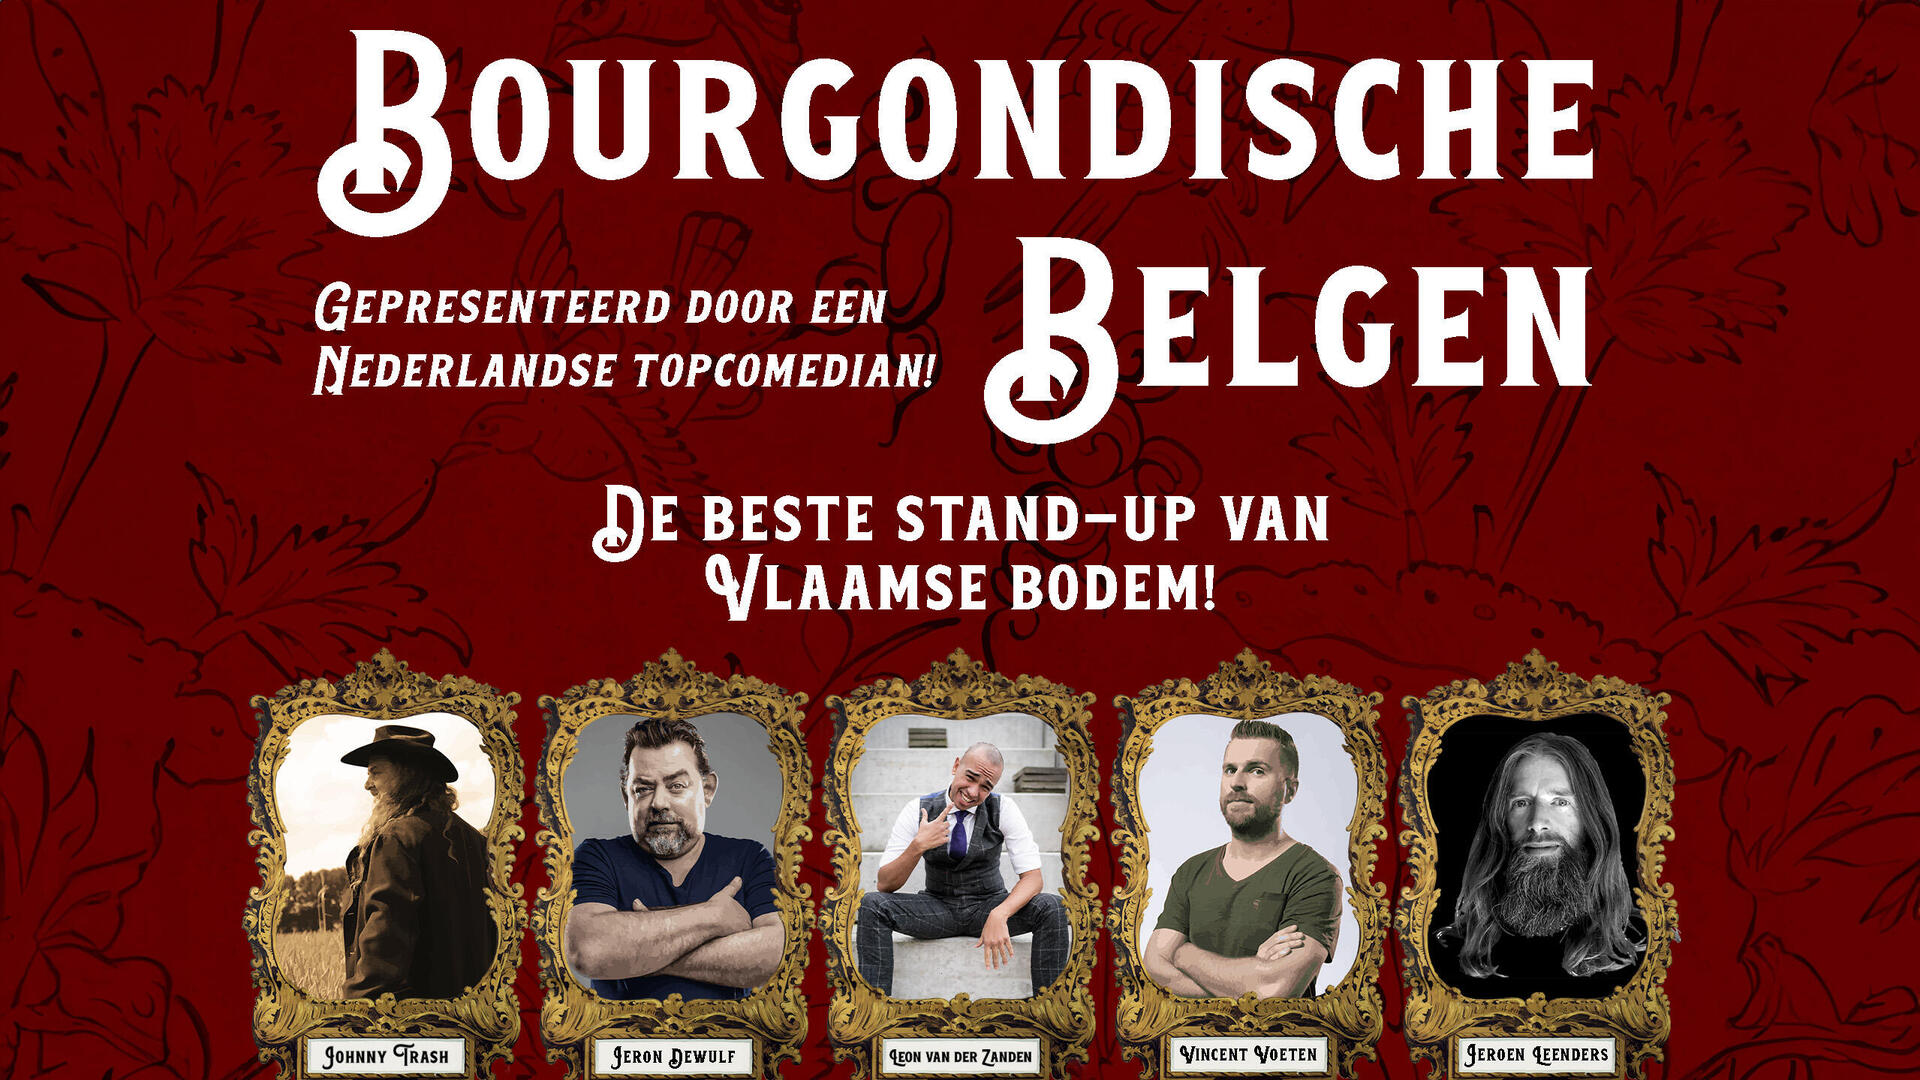 Bourgondische Belgen